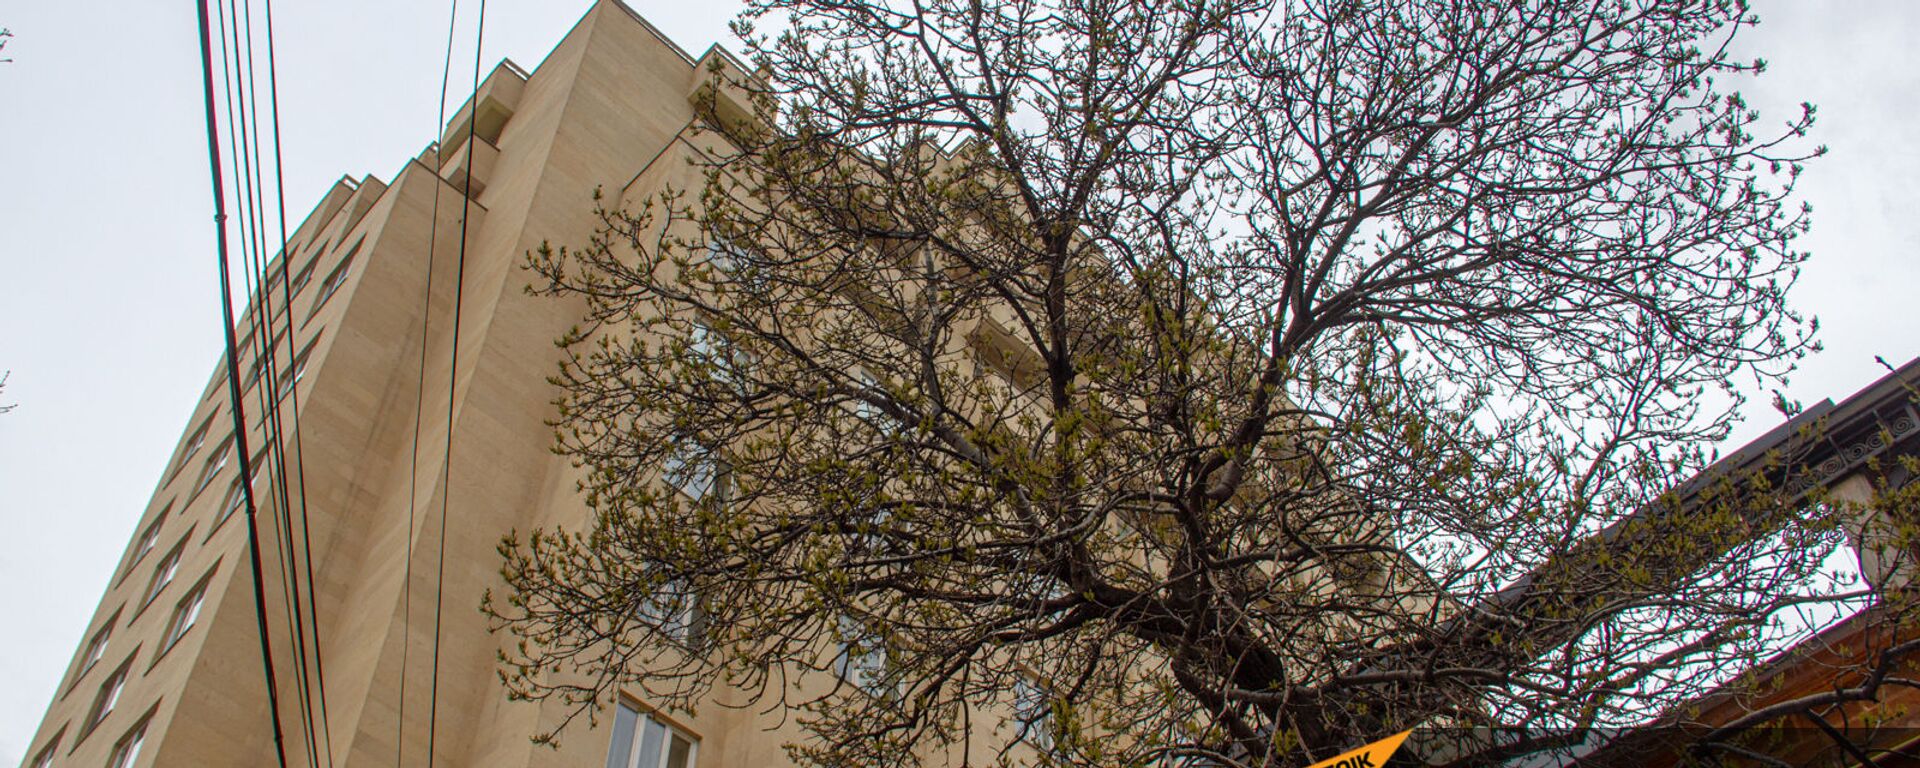 Дерево с распустившимися почками на фоне высотного здания в Ереване - Sputnik Армения, 1920, 28.04.2021